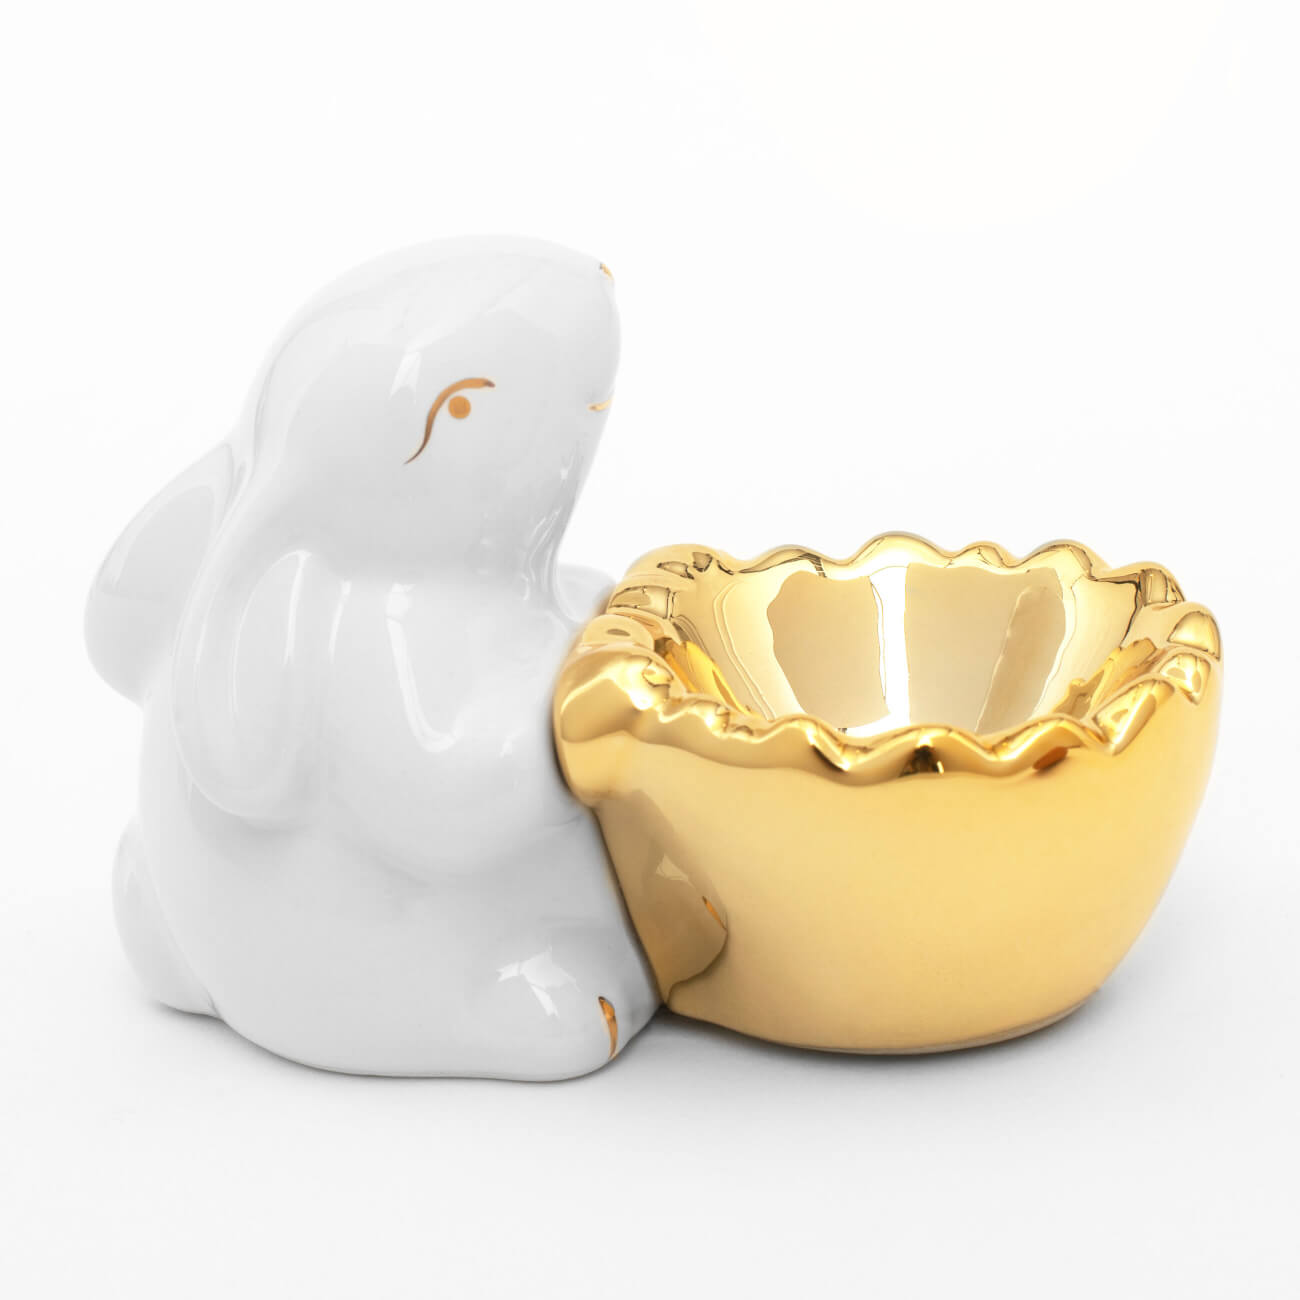 Подставка для яйца, 11 см, керамика, бело-золотистая, Кролик со скорлупой, Easter gold подставка под телефон кролик рич бронза